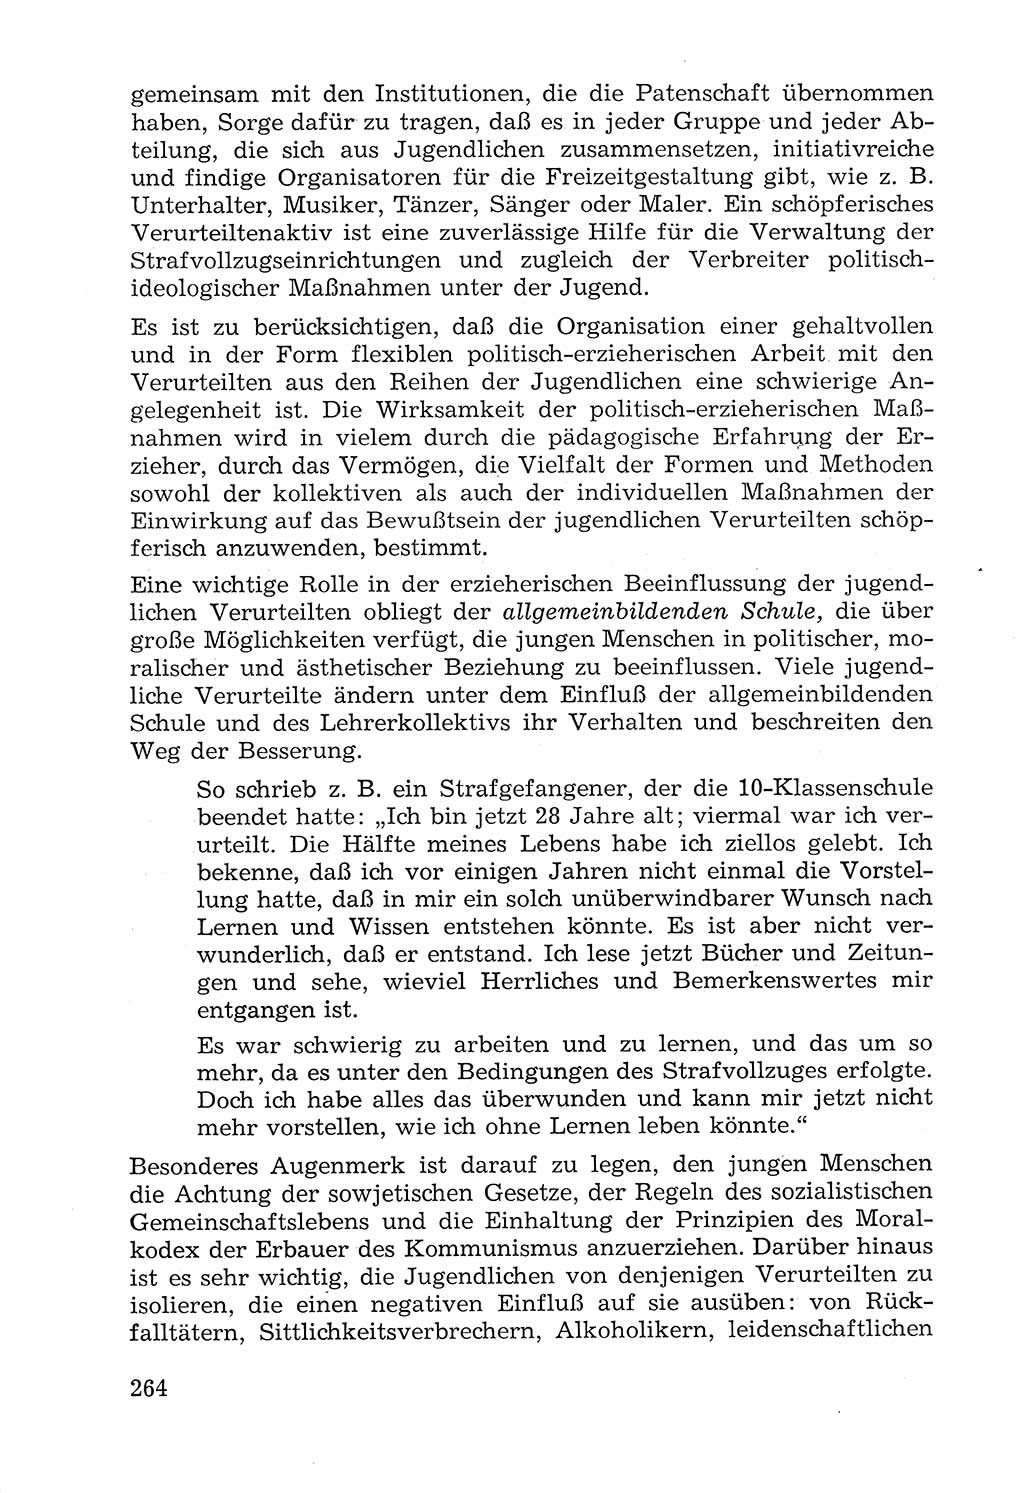 Lehrbuch der Strafvollzugspädagogik [Deutsche Demokratische Republik (DDR)] 1969, Seite 264 (Lb. SV-Pd. DDR 1969, S. 264)